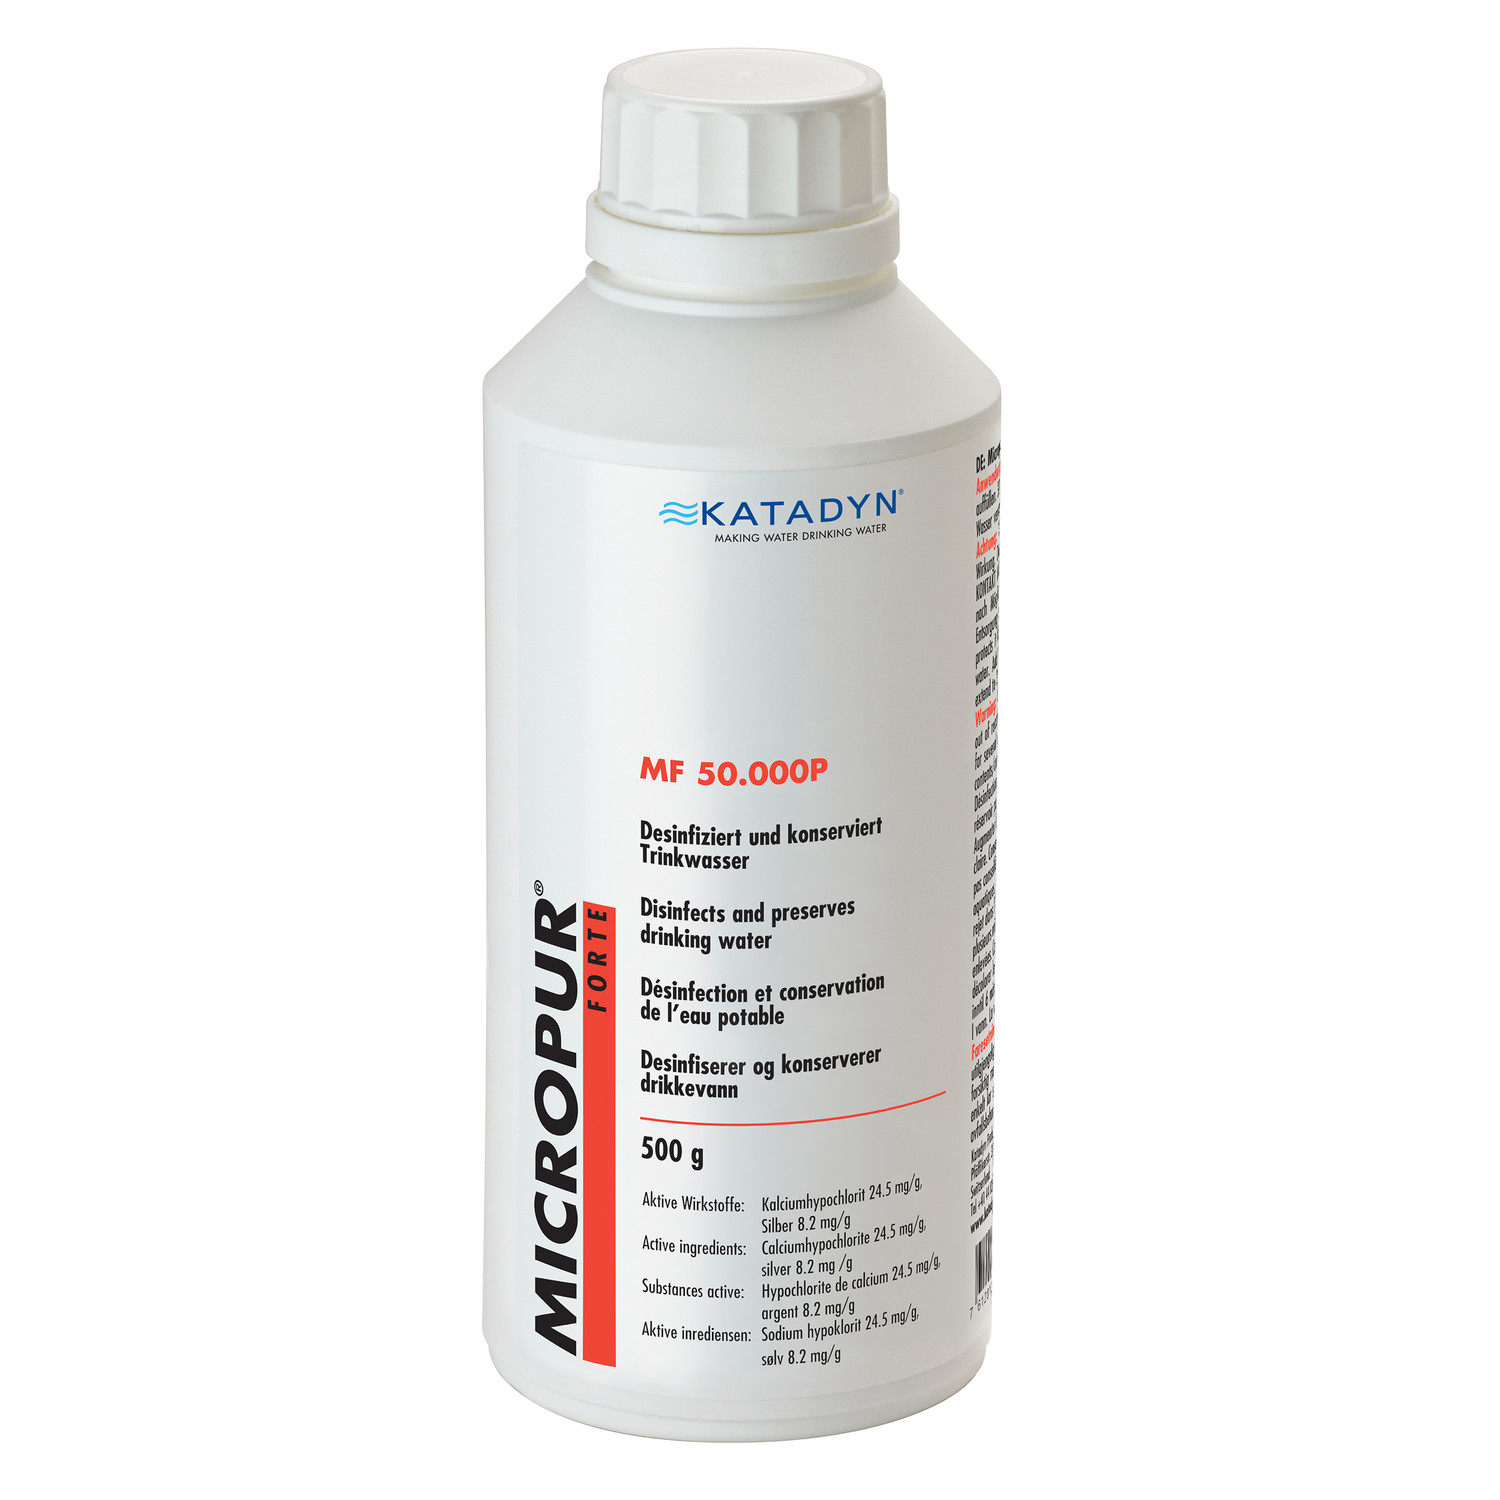 Katadyn Micropur Forte Wasserdesinfektion MF 50.000P Pulver